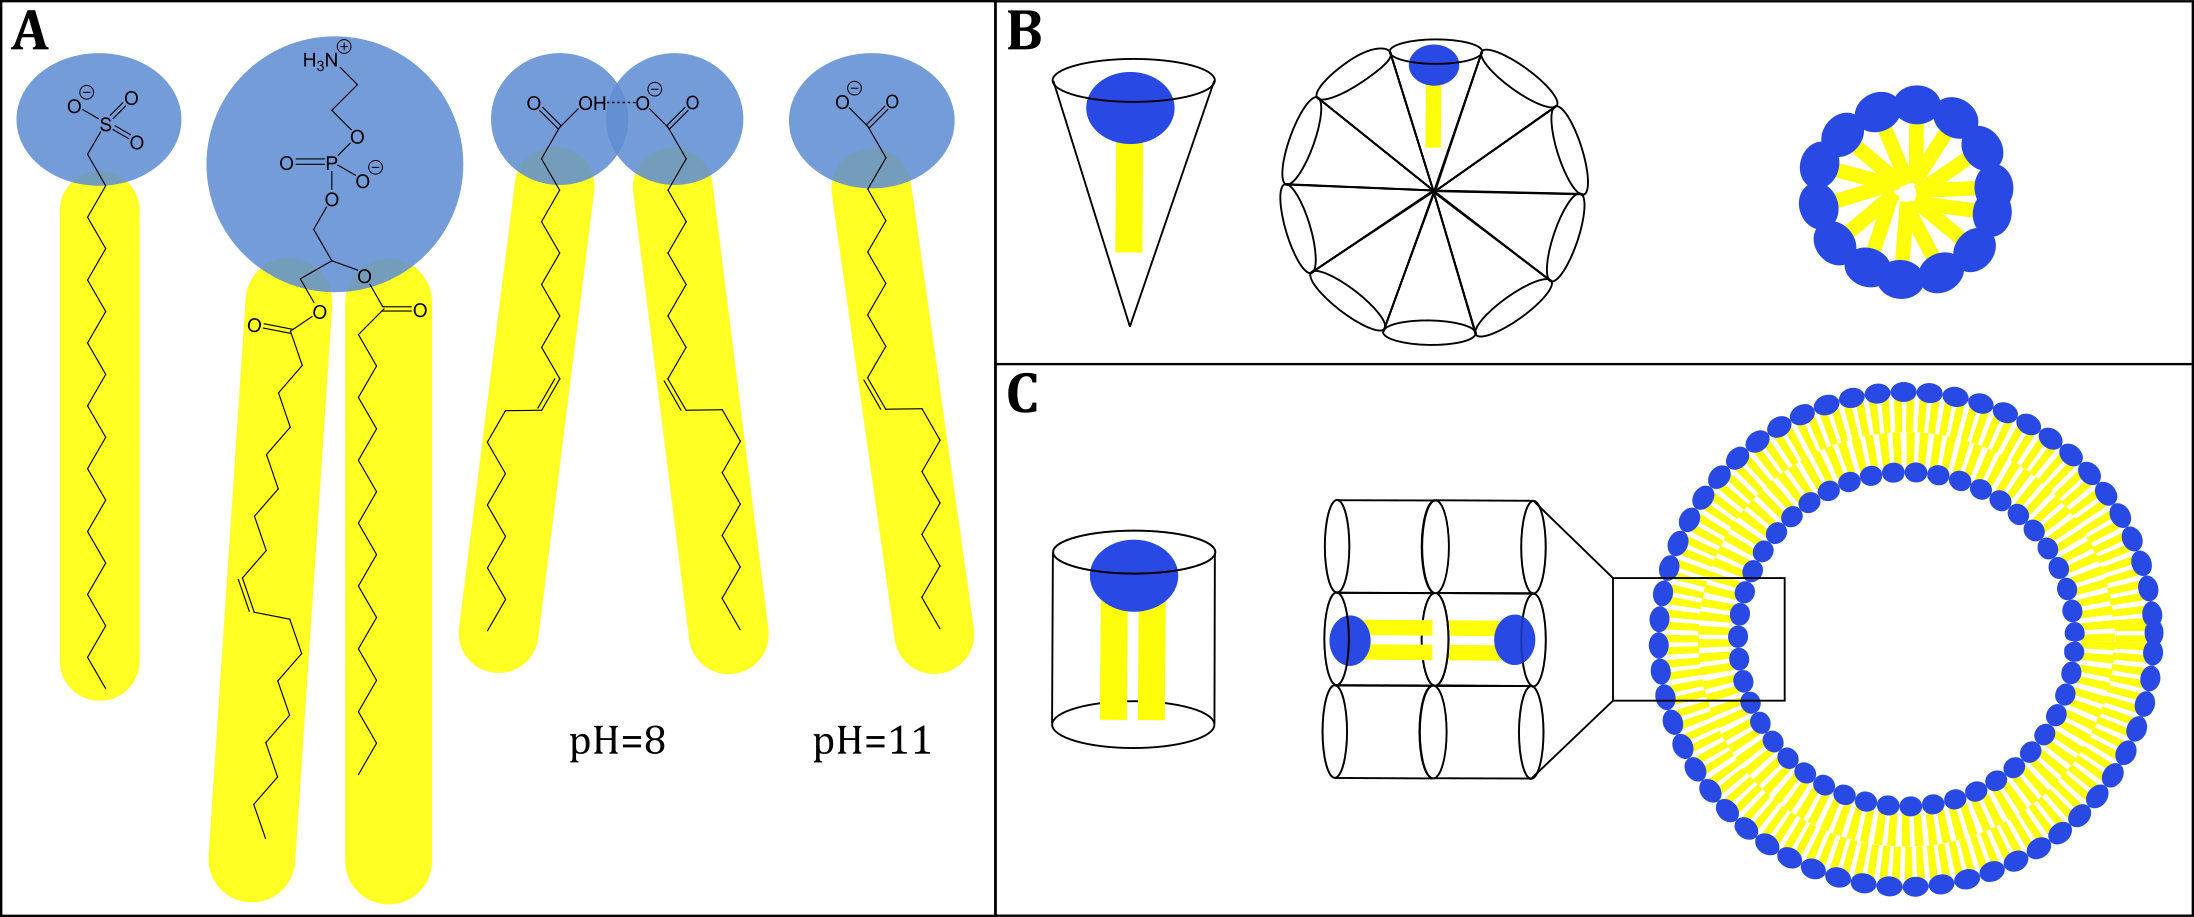 (A, von links nach rechts) Typisches Sulfonat-Tensid, Phosphocholin-Lipid, Ölsäuredimer bei pH = 8, depro-toniertes Ölsäuremonomer bei pH = 11. (B) Darstellung eines Tensids mit konischer Geometrie das Mizellen bildet. (C) Darstellung eines zylindrischen Lipids, das Vesikel bildet 